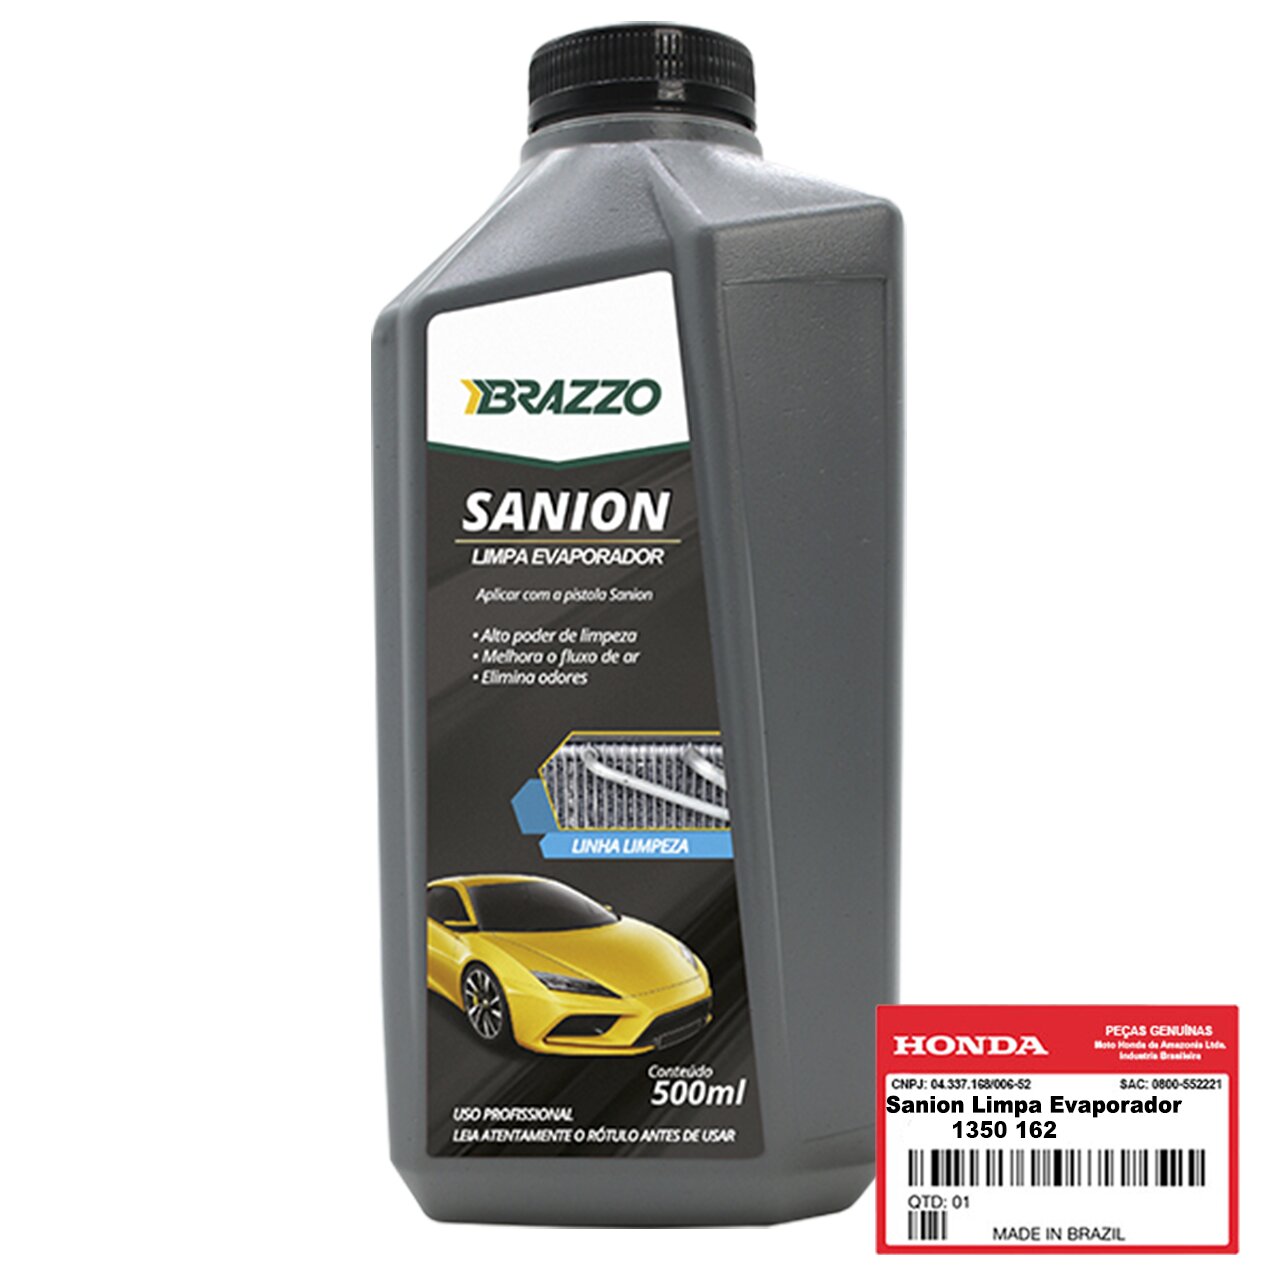 Sanion Limpa Evaporador Ar-Condicionado Honda Original 1350 162